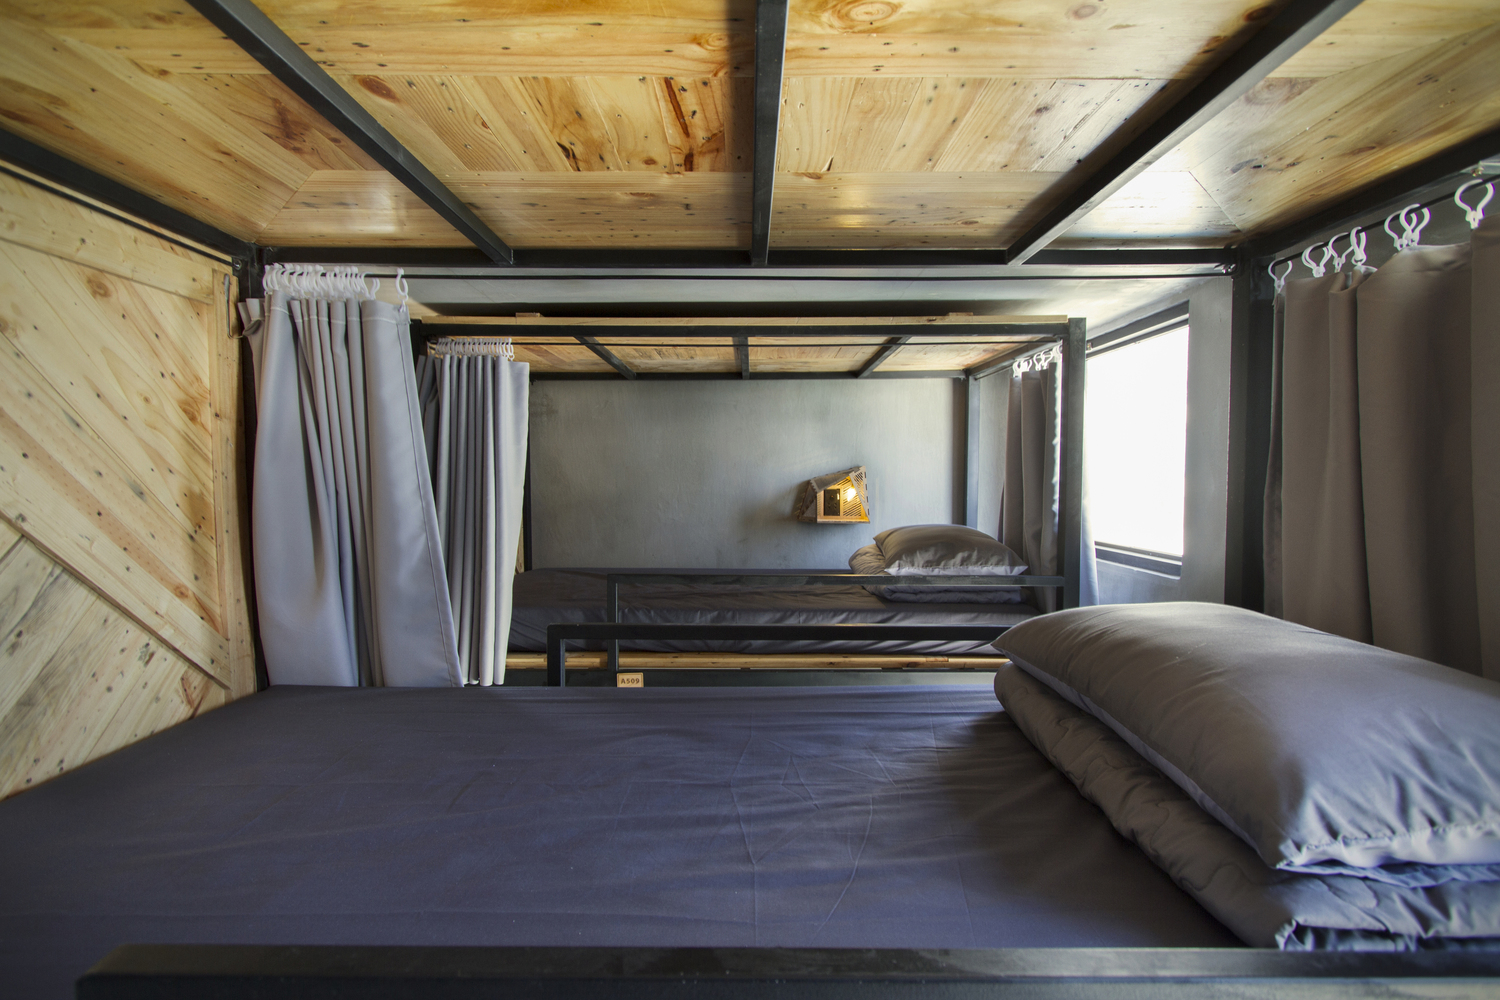 Hình ảnh các phòng ngủ trong nhà trọ Memory với trần ốp gỗ, rèm che kín đáo